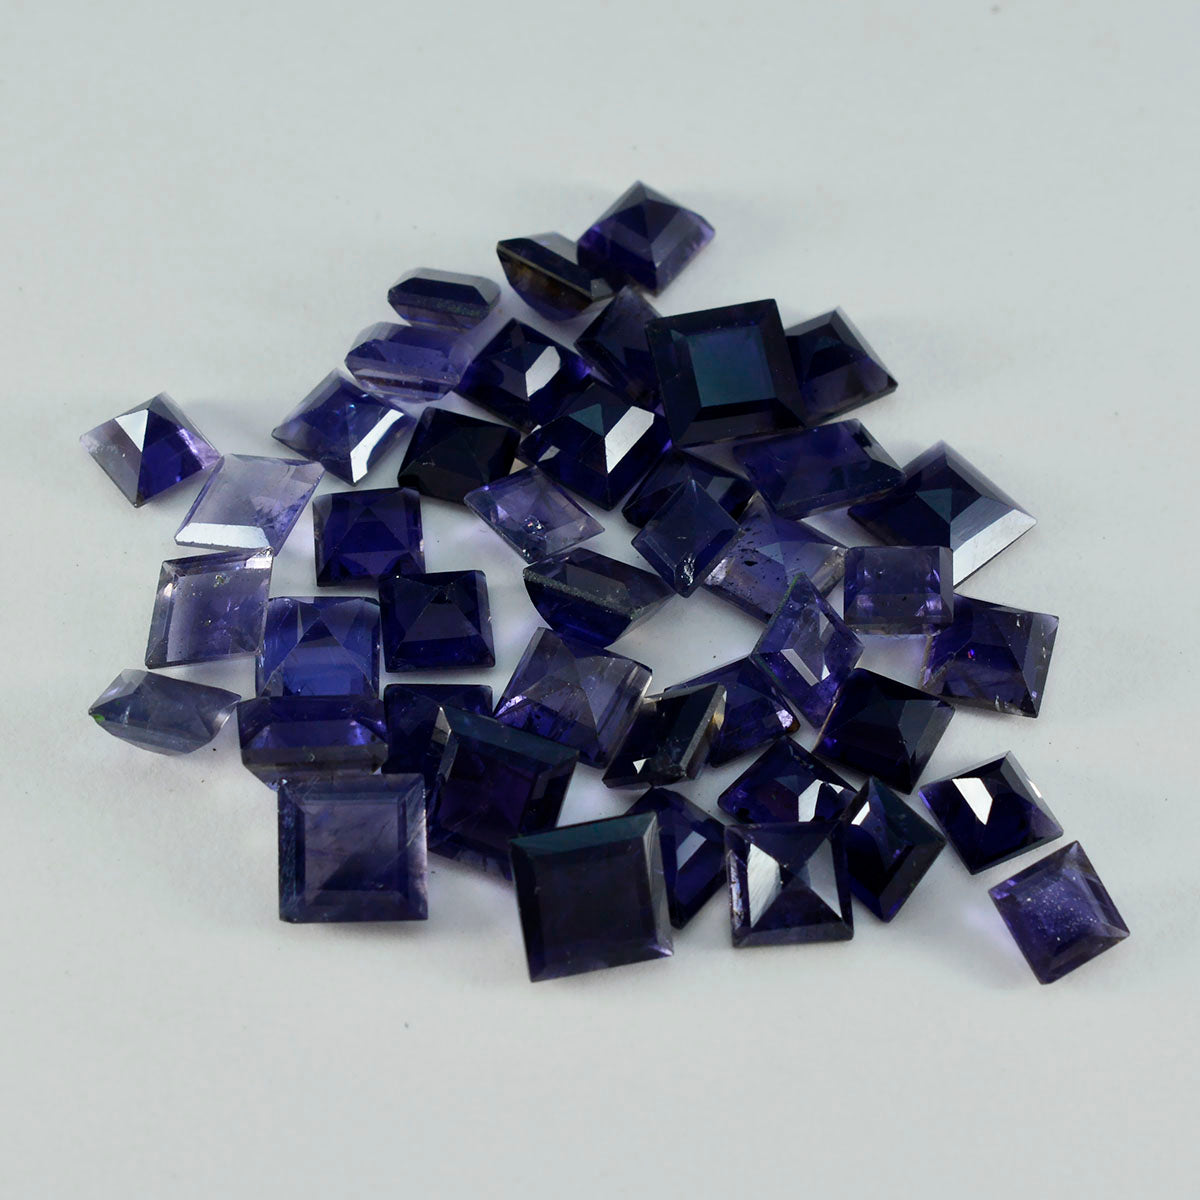 Riyogems 1 pièce d'iolite bleue à facettes 9x9mm forme carrée a1 qualité pierres précieuses en vrac